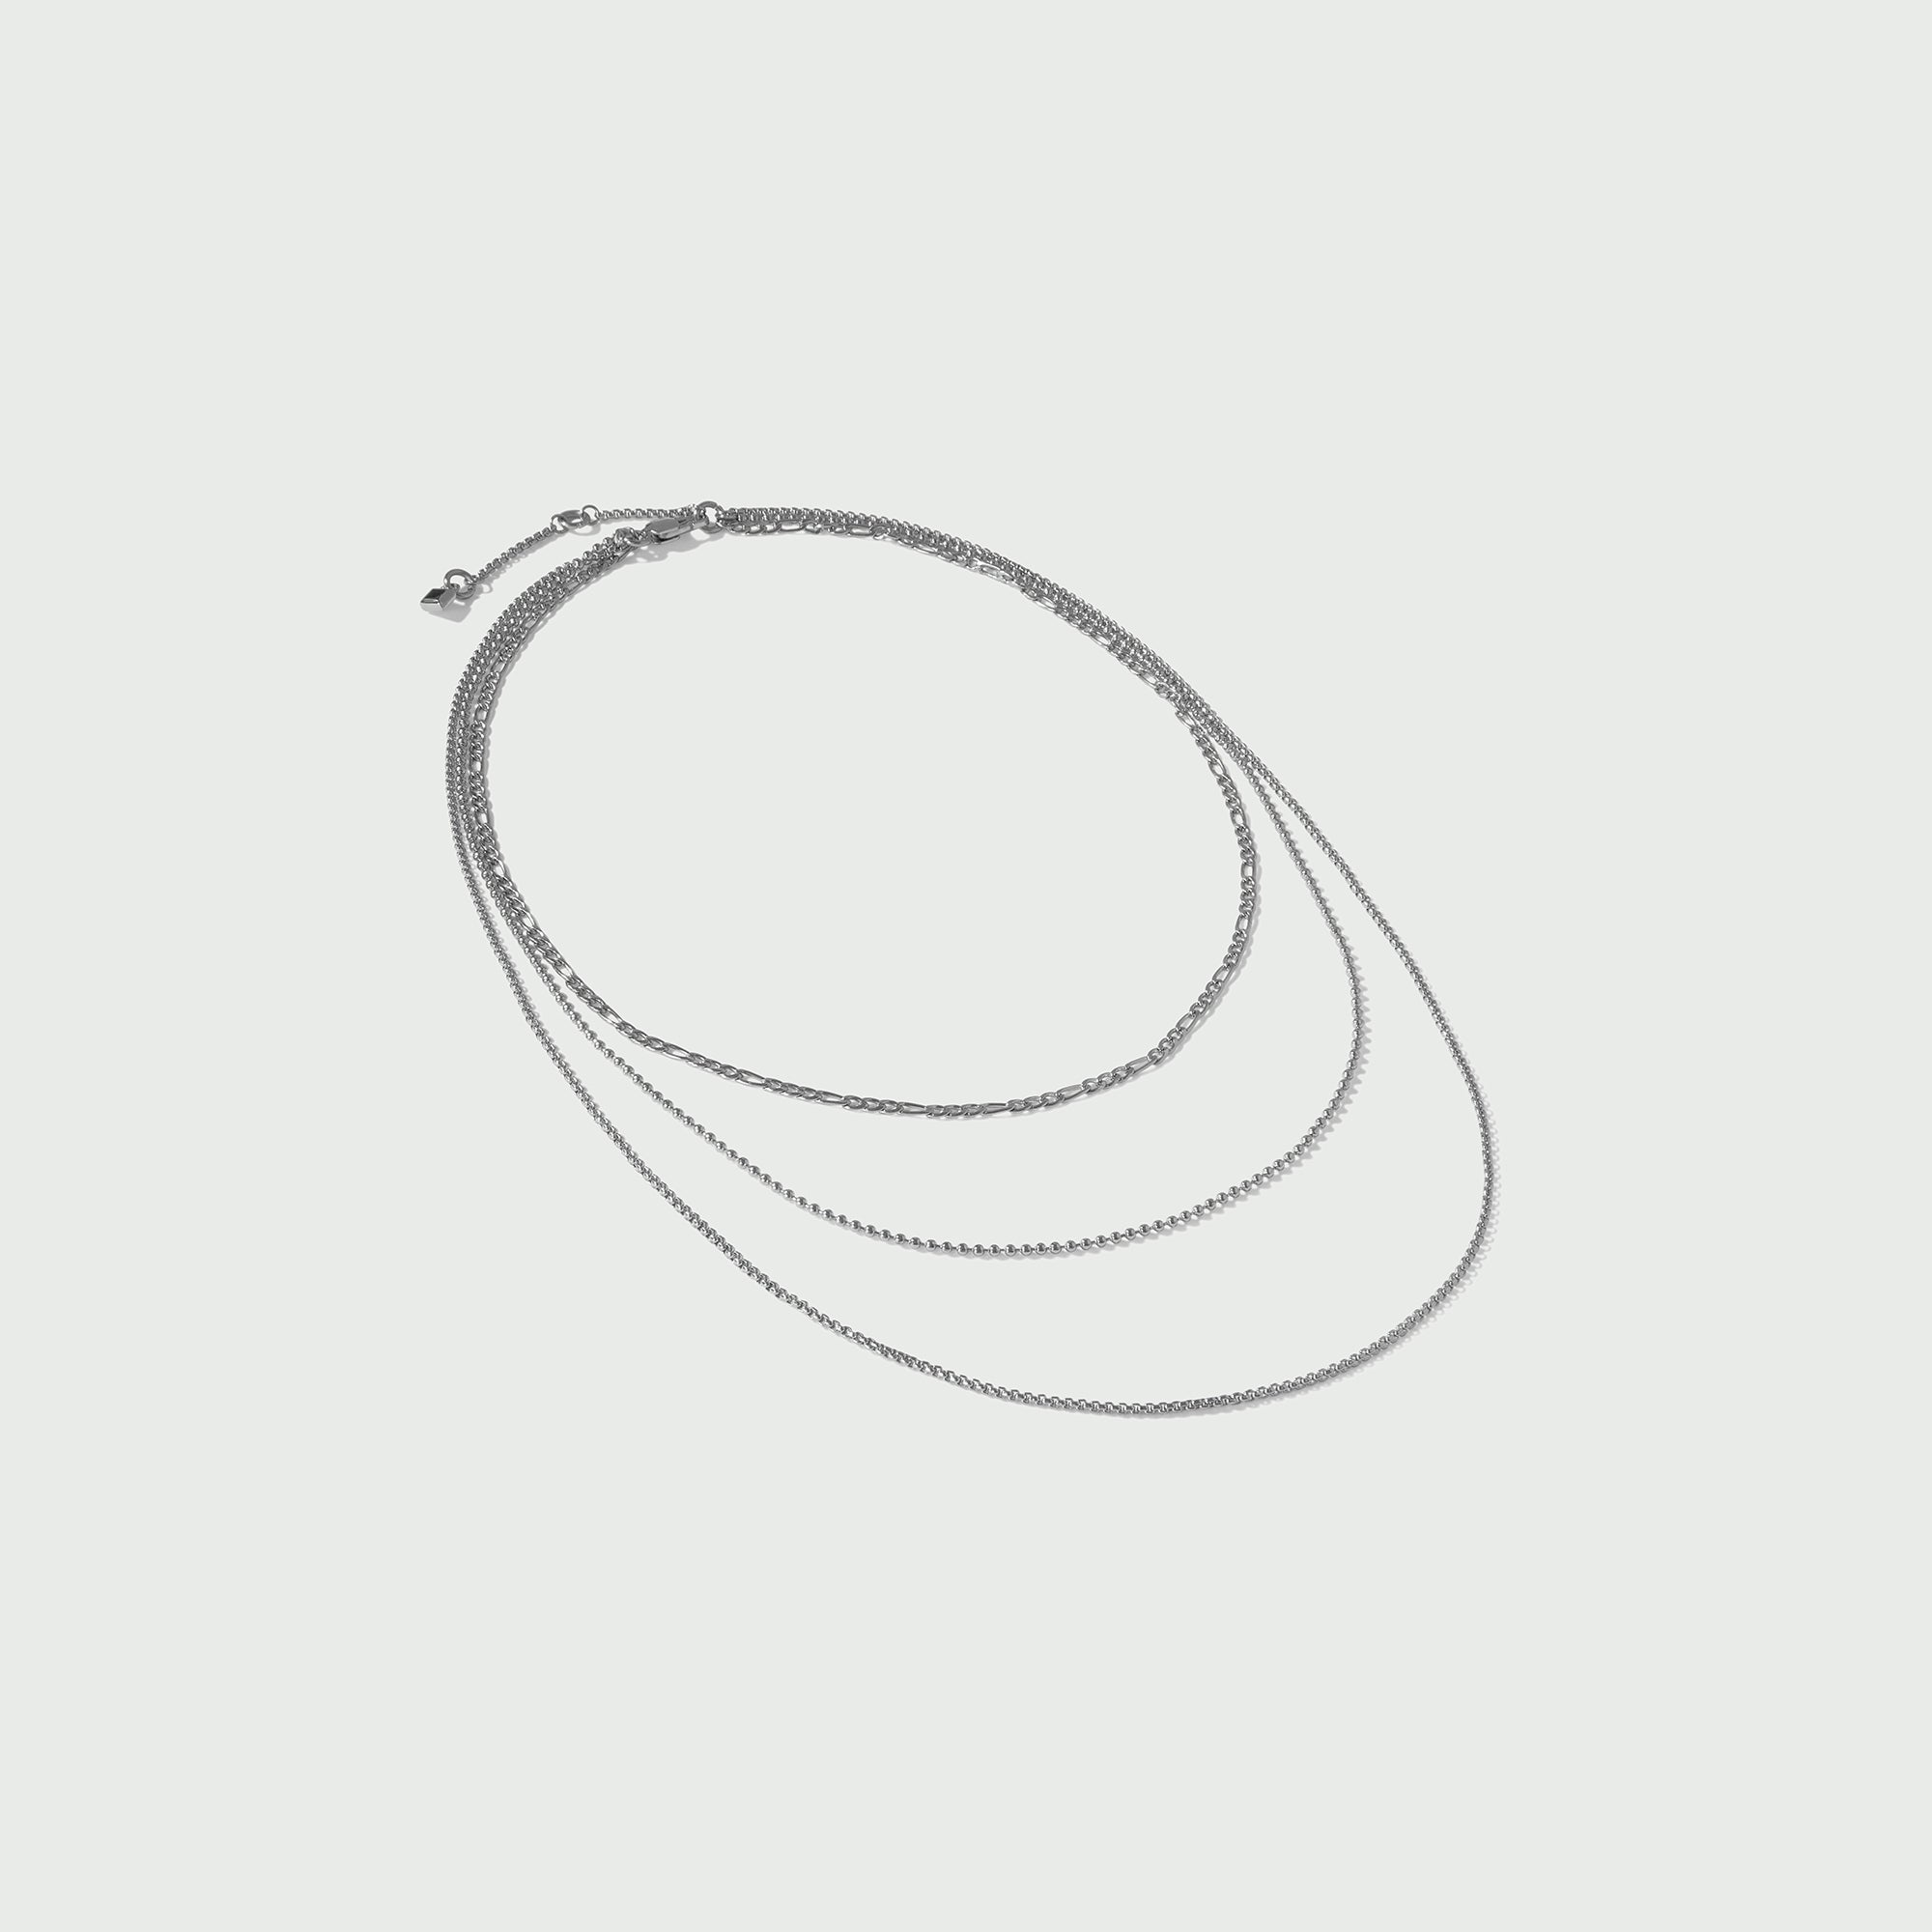 LUXE Multi Row Chain Necklace - Silver - Orelia LUXE